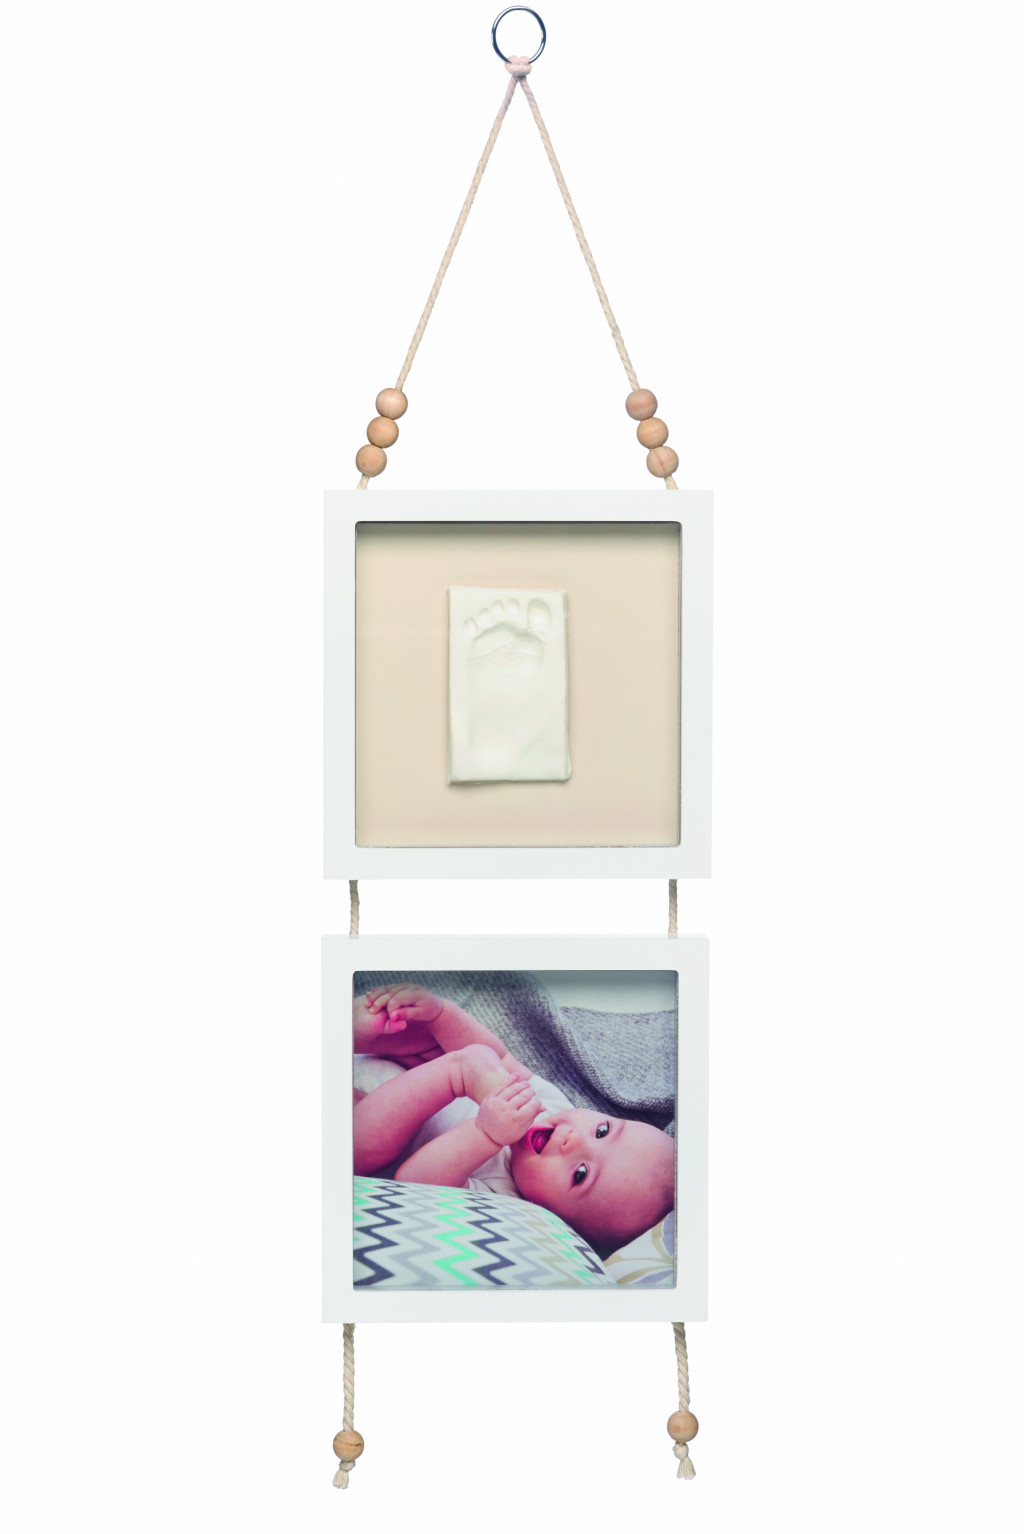 Baby Art Závesný rámček Hanging Frame Double